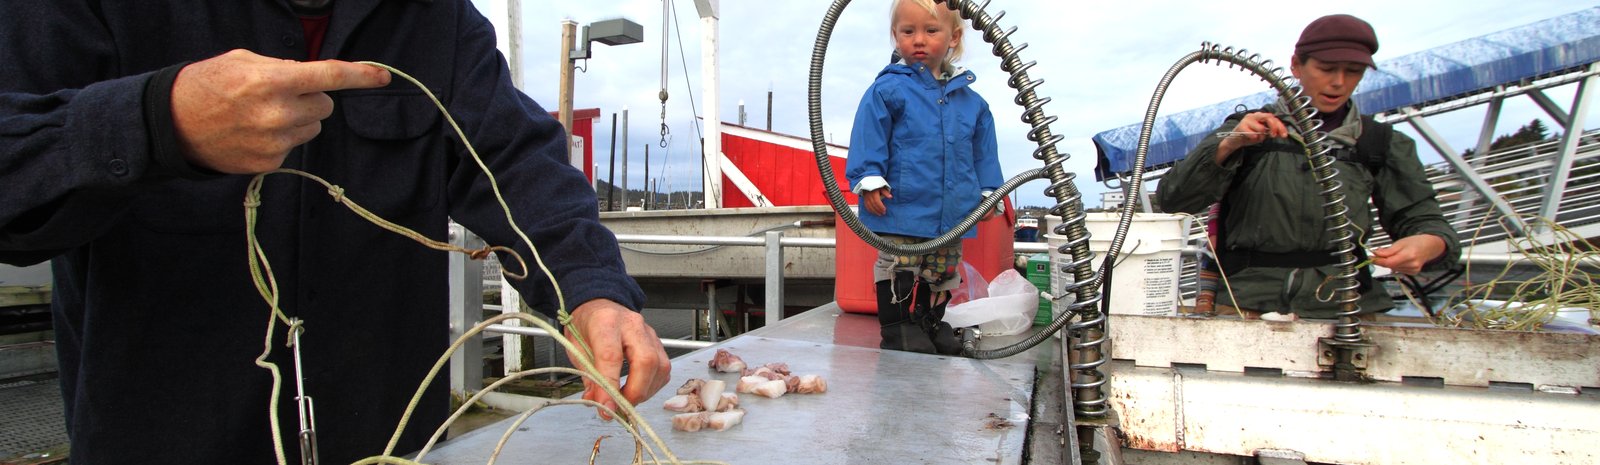 Herring Fishery in Alaska